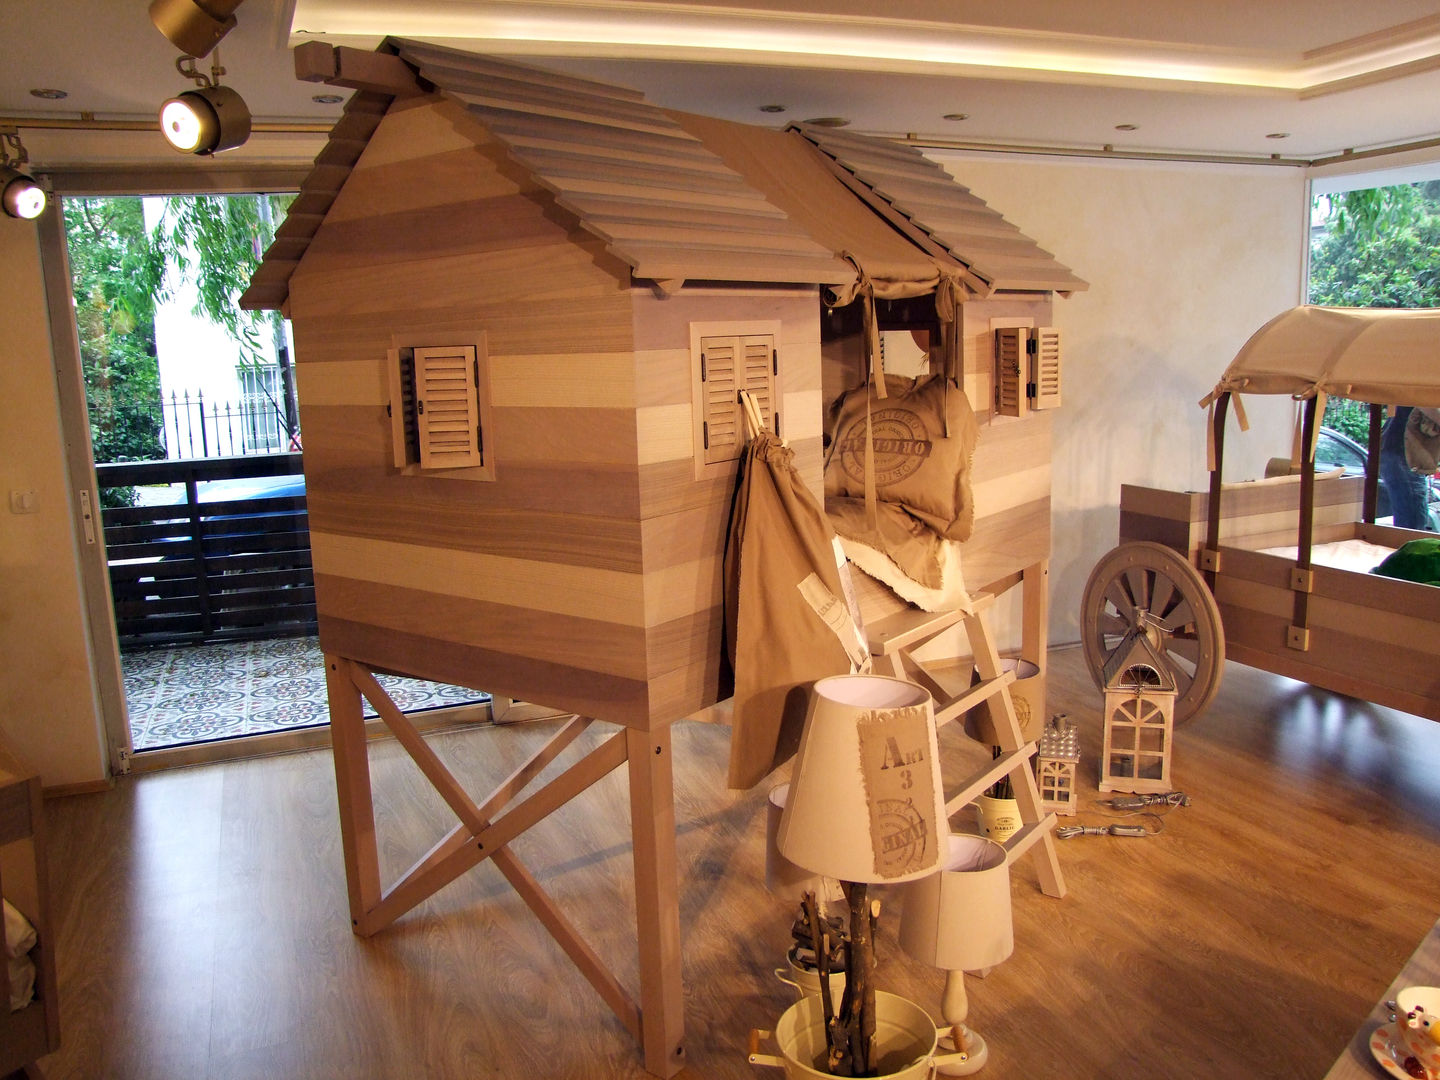 LACOTE Çiftlik temalı bebek ve çocuk odası , Lacote Design Lacote Design Modern Kid's Room Beds & cribs